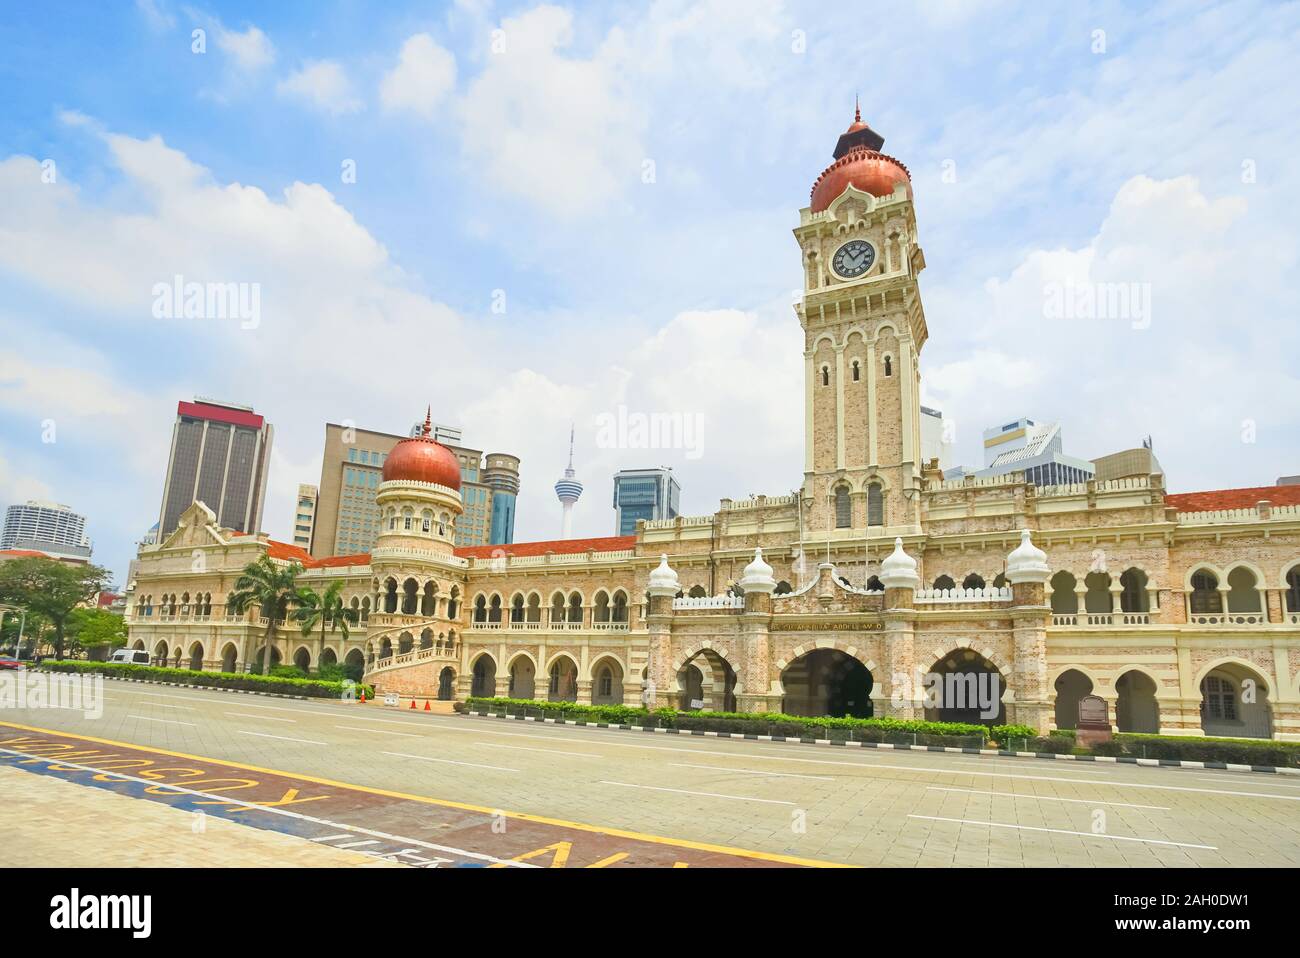 Sultan Abdul Samad building à Kuala Lumpur, Malaisie. Le beau bâtiment est situé en face de l'Dataran Merdeka. Banque D'Images